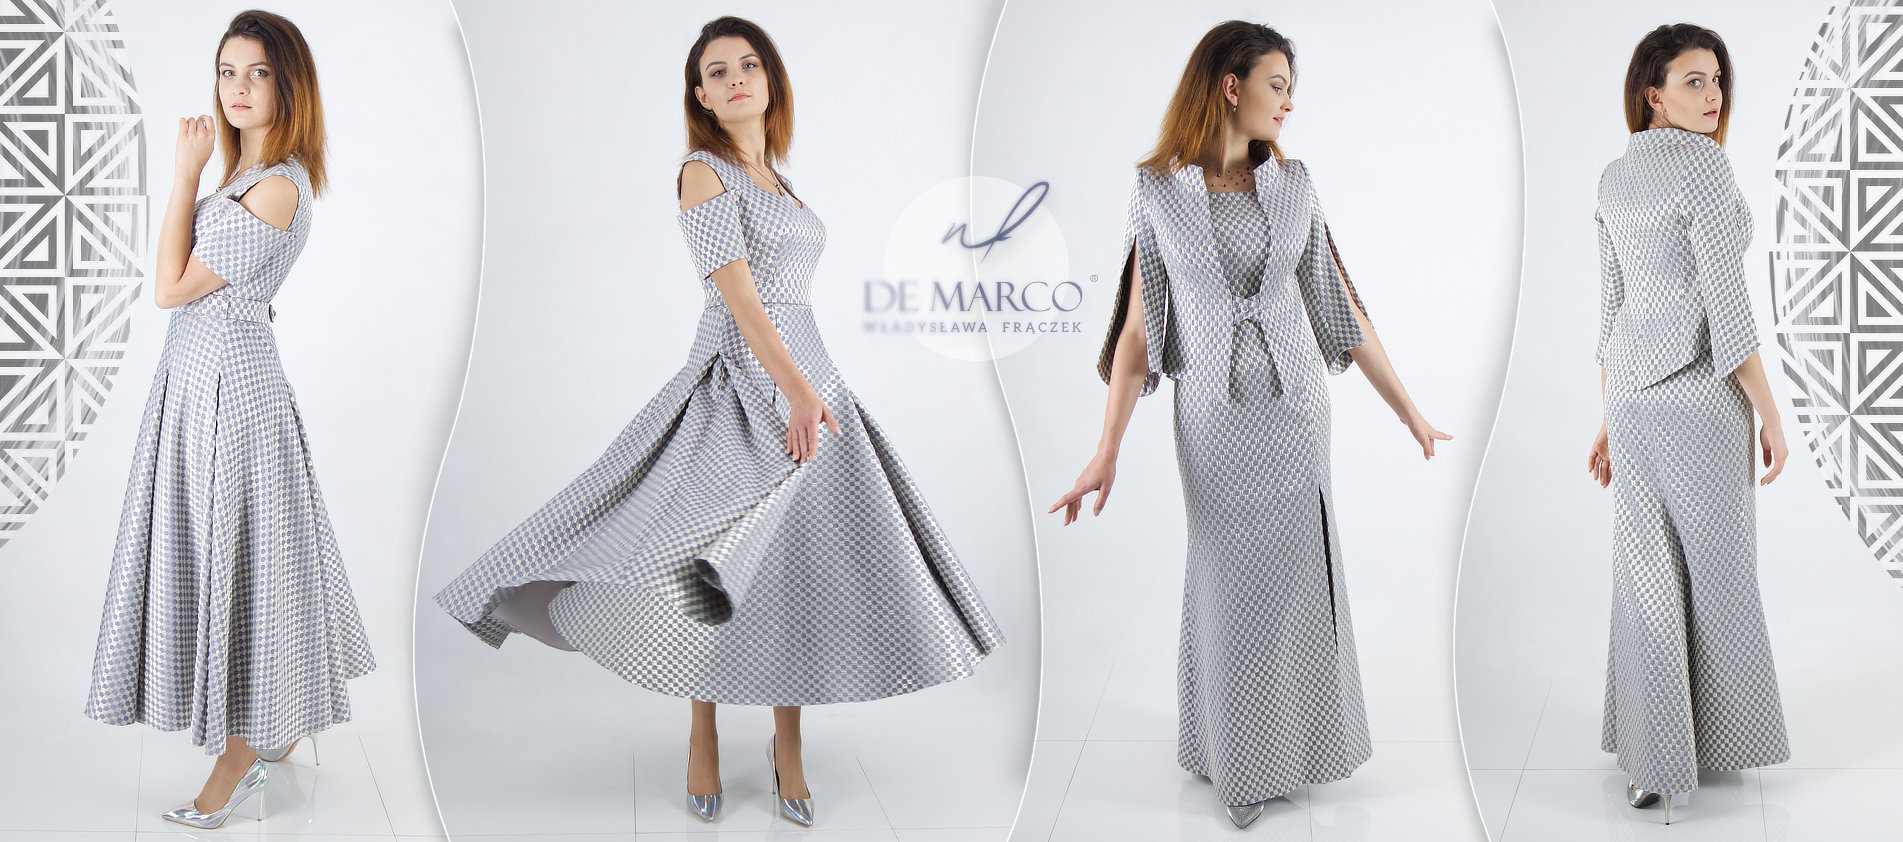 Ekskluzywne suknie dla matki weselnej na jesienny ślub syna lub córki. De Marco luksusowa polska marka.